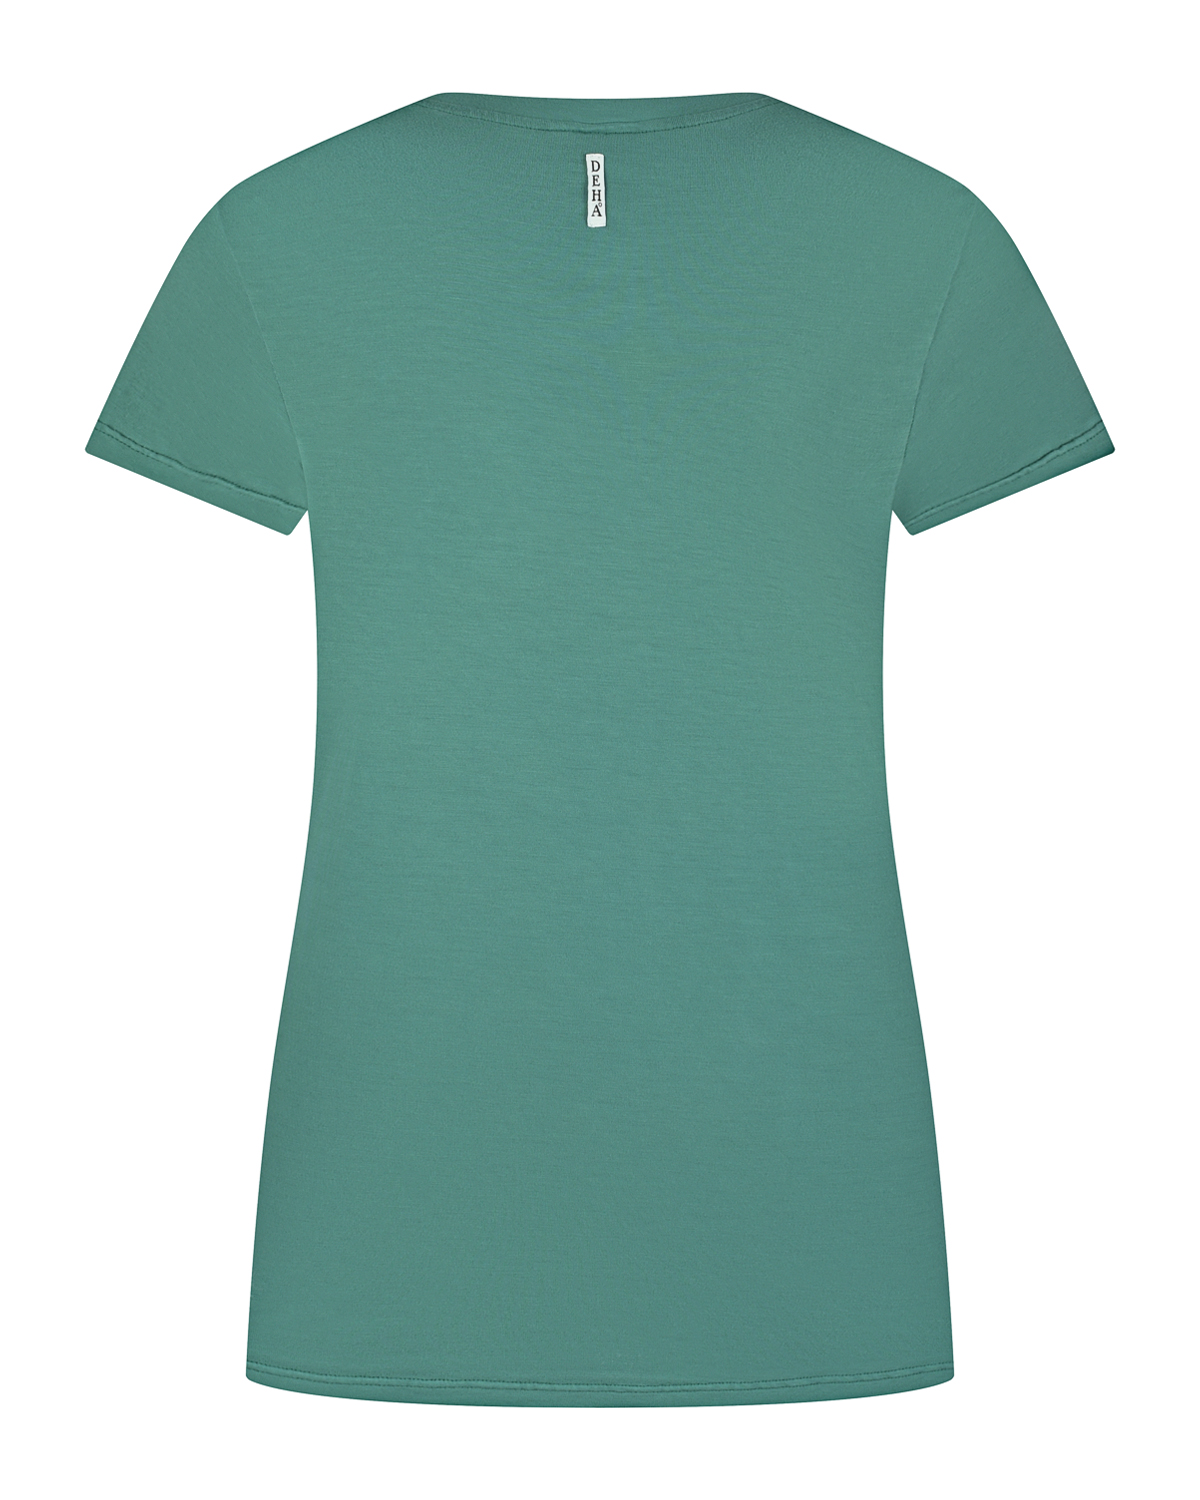 Зеленая футболка с принтом "Pacific" Deha, размер 40, цвет зеленый - фото 6